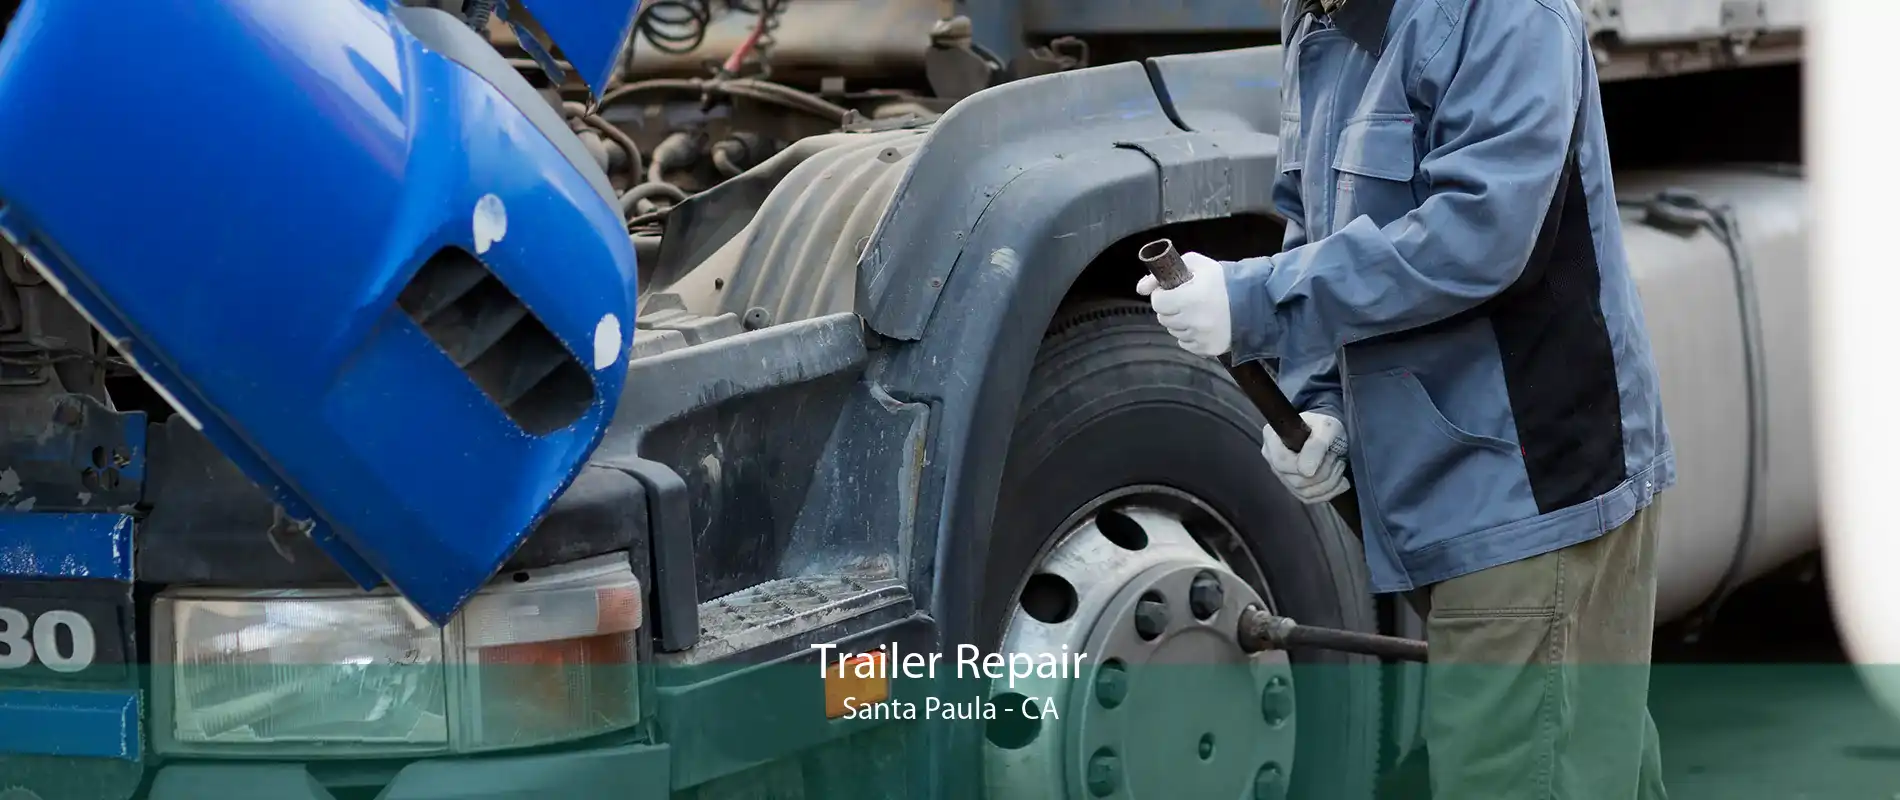 Trailer Repair Santa Paula - CA